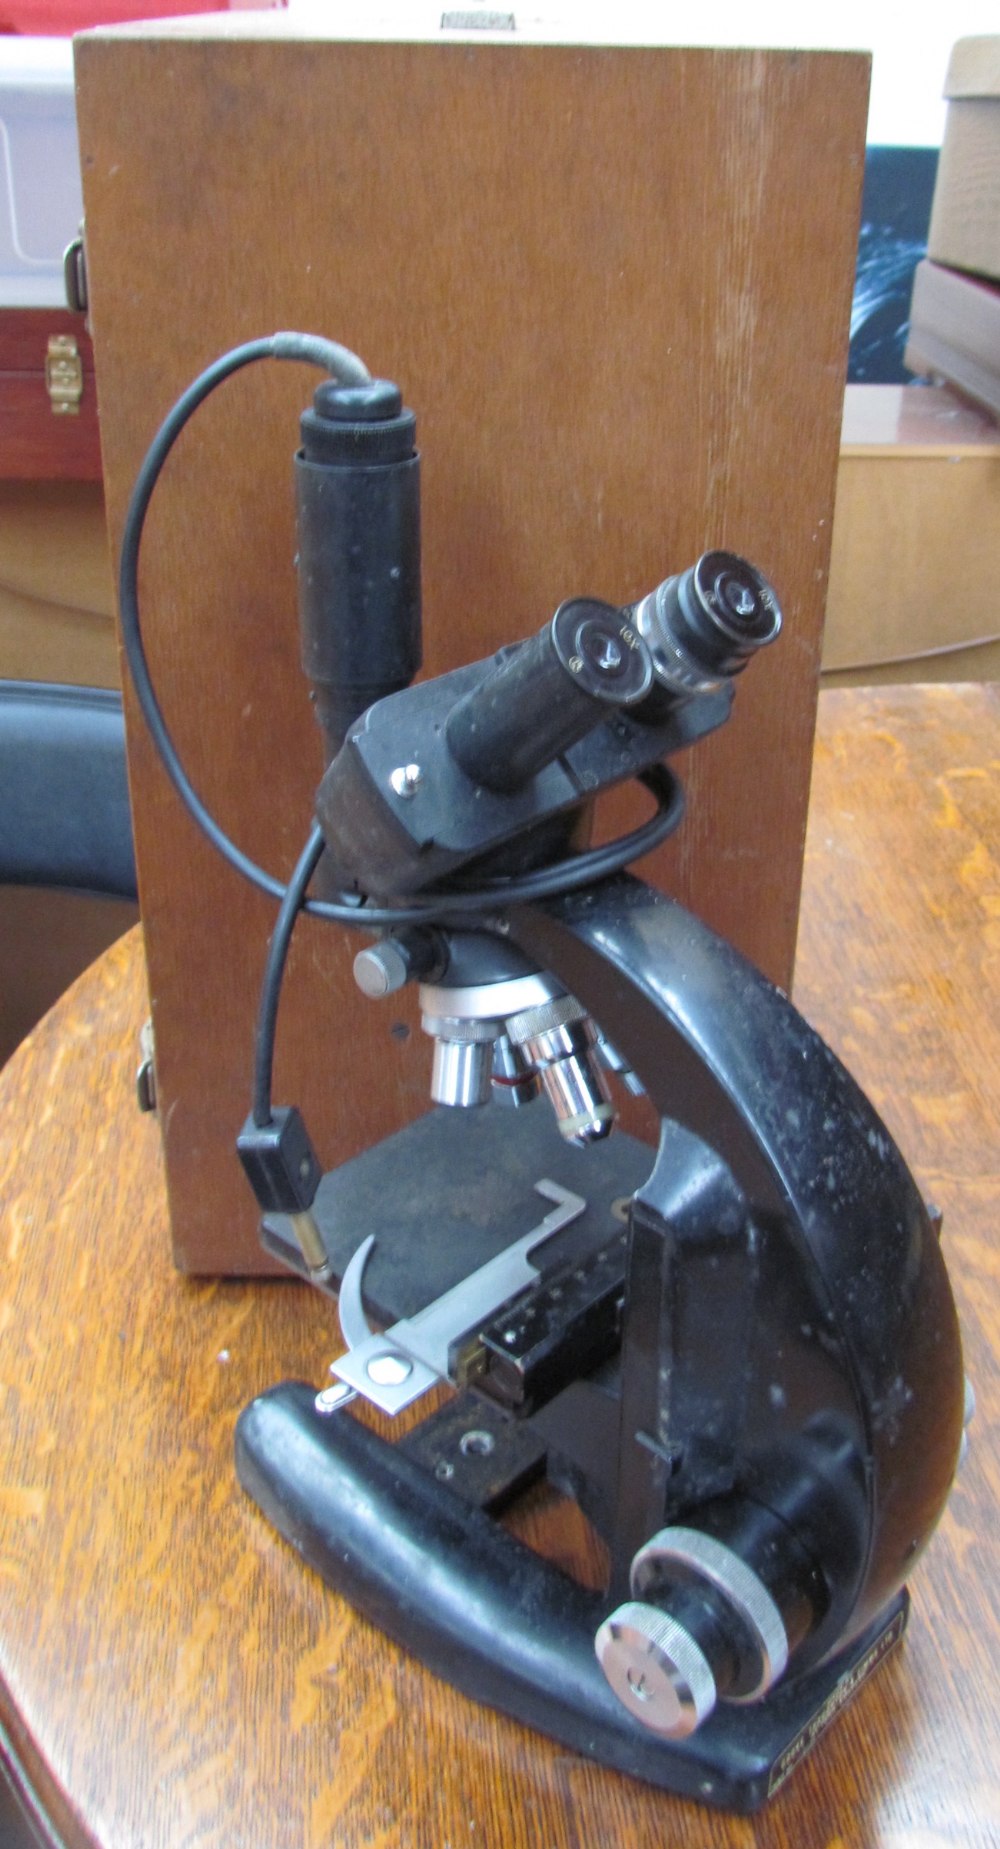 A Cooke Troughton & Simms Ltd binocular microscope,